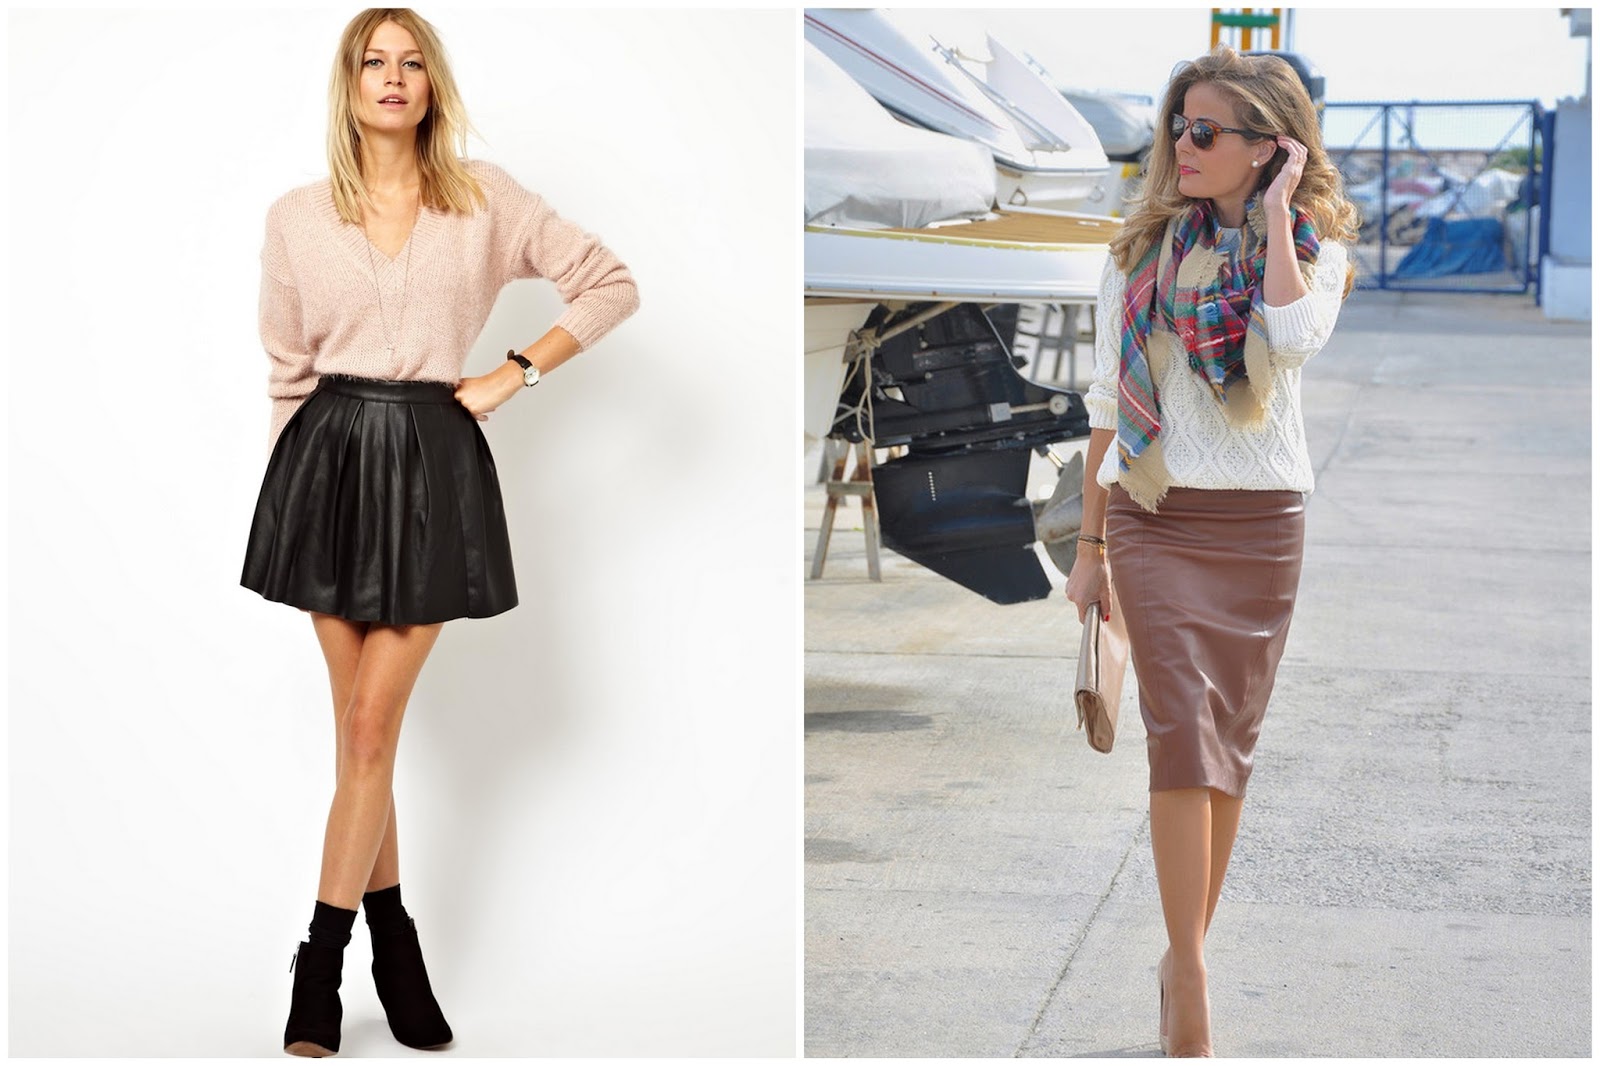 Astuces : Comment porter jupe droite courte ?